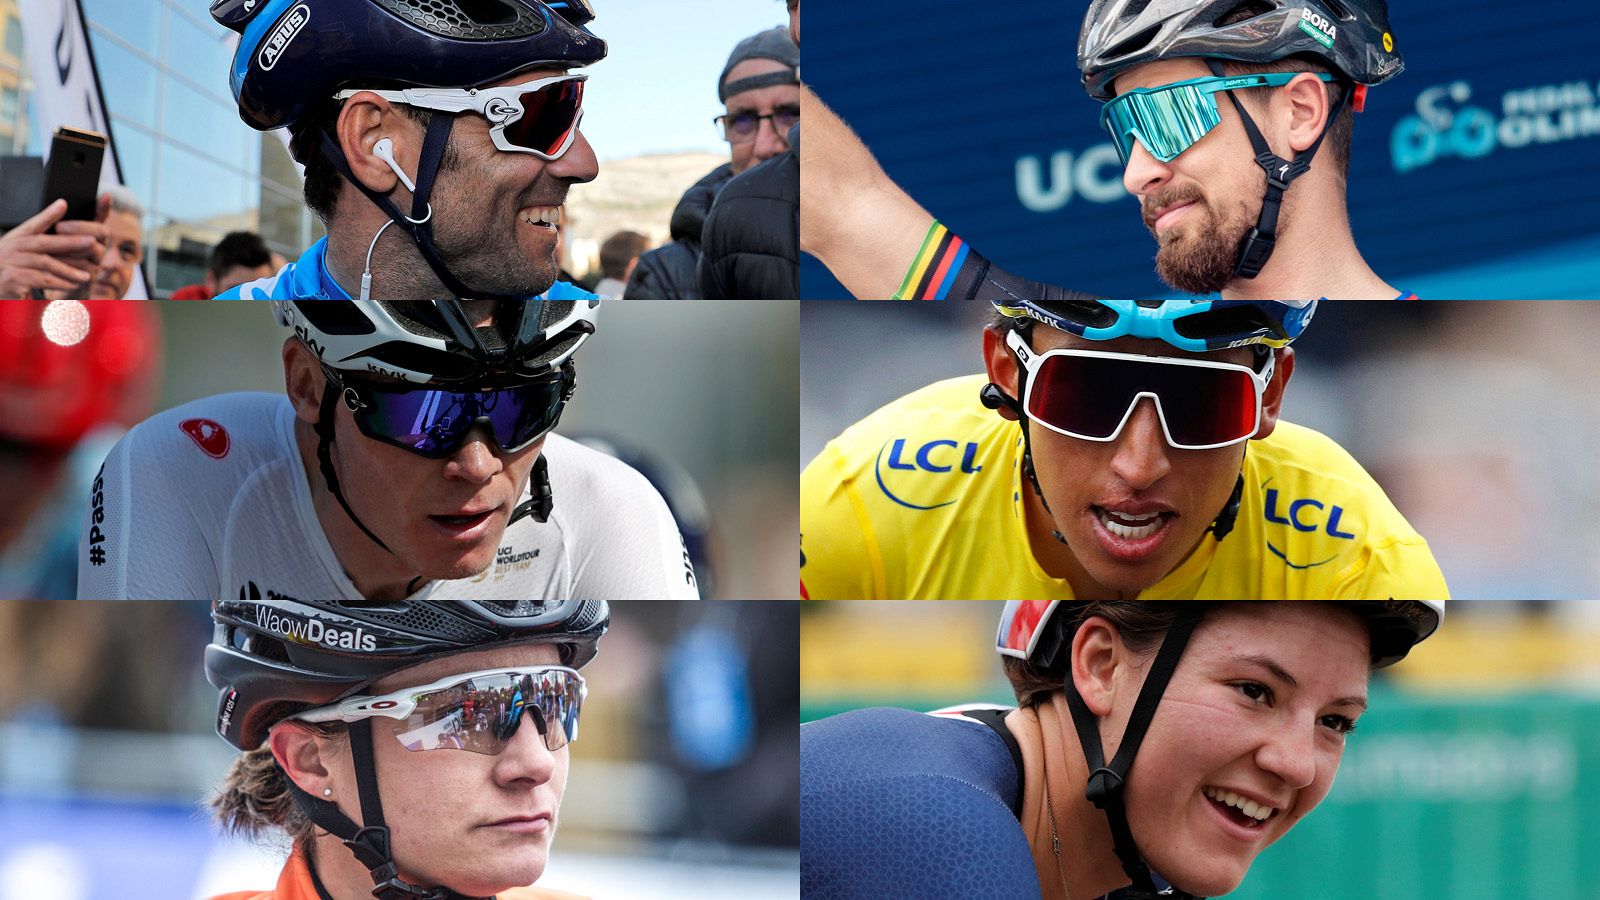 De izquierda a derecha y de arriba abajo: Valverde, Sagan, Froome, Bernal, Vos y Dygert